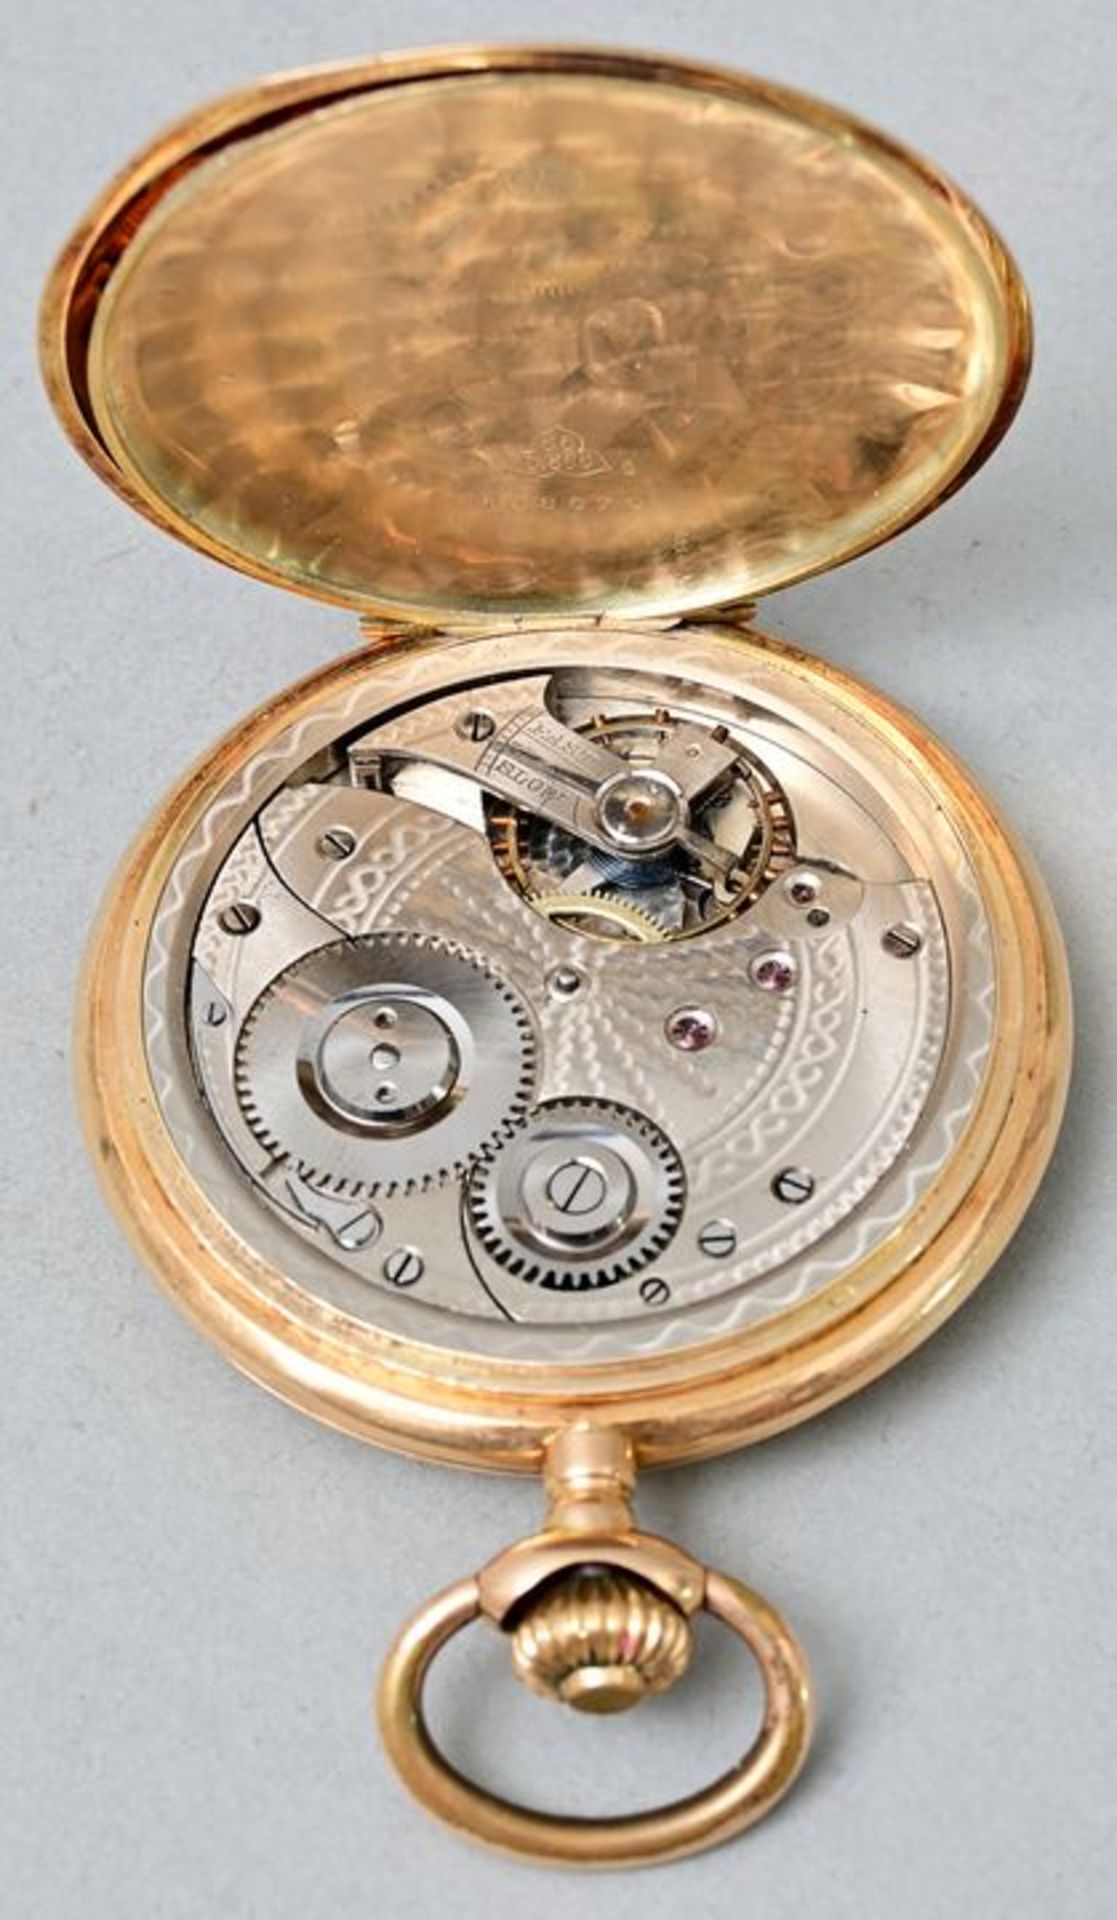 Goldene Herrentaschenuhr, Glashütte / gold pocket watch - Bild 3 aus 5